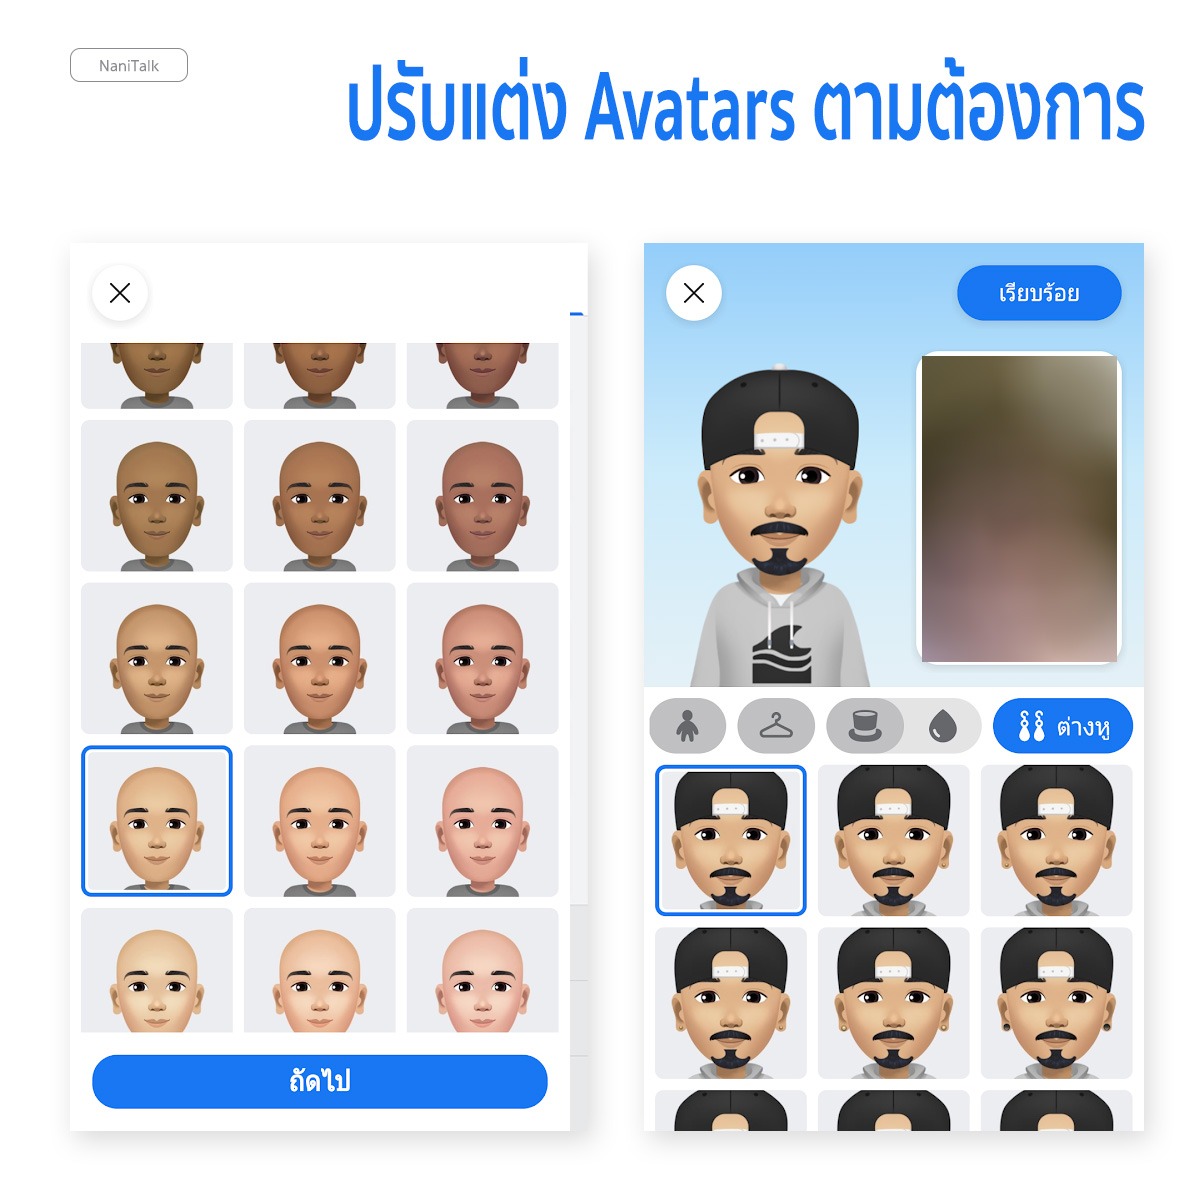 วิธีสร้าง Facebook Avatar แทนตัวเอง ส่งสติ๊กเกอร์ให้เพื่อนได้!